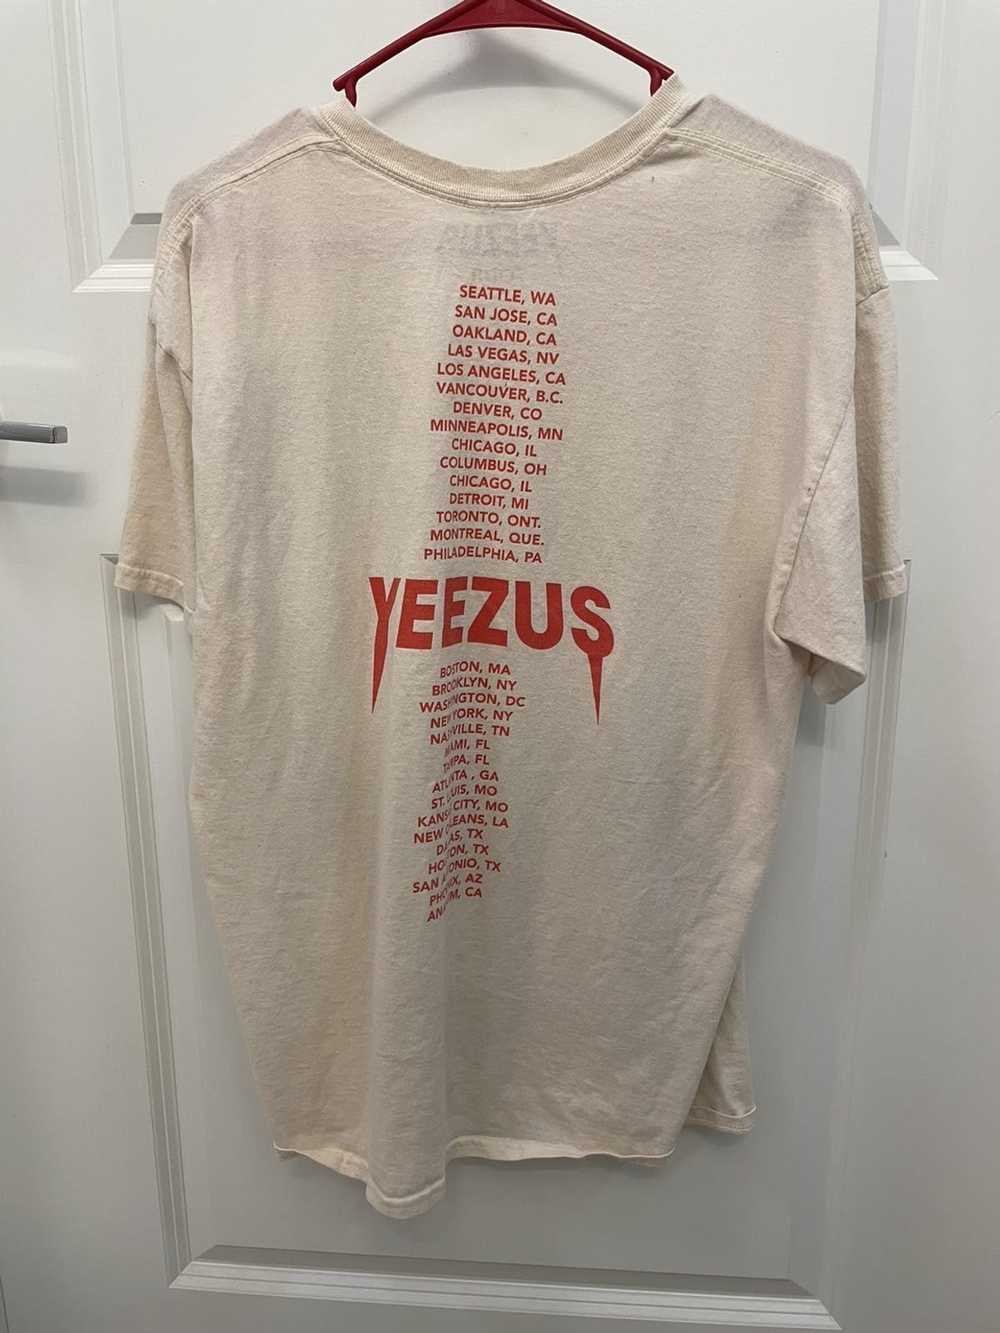 Kanye West Kanye West Yeezus Tour T Shirt - image 2